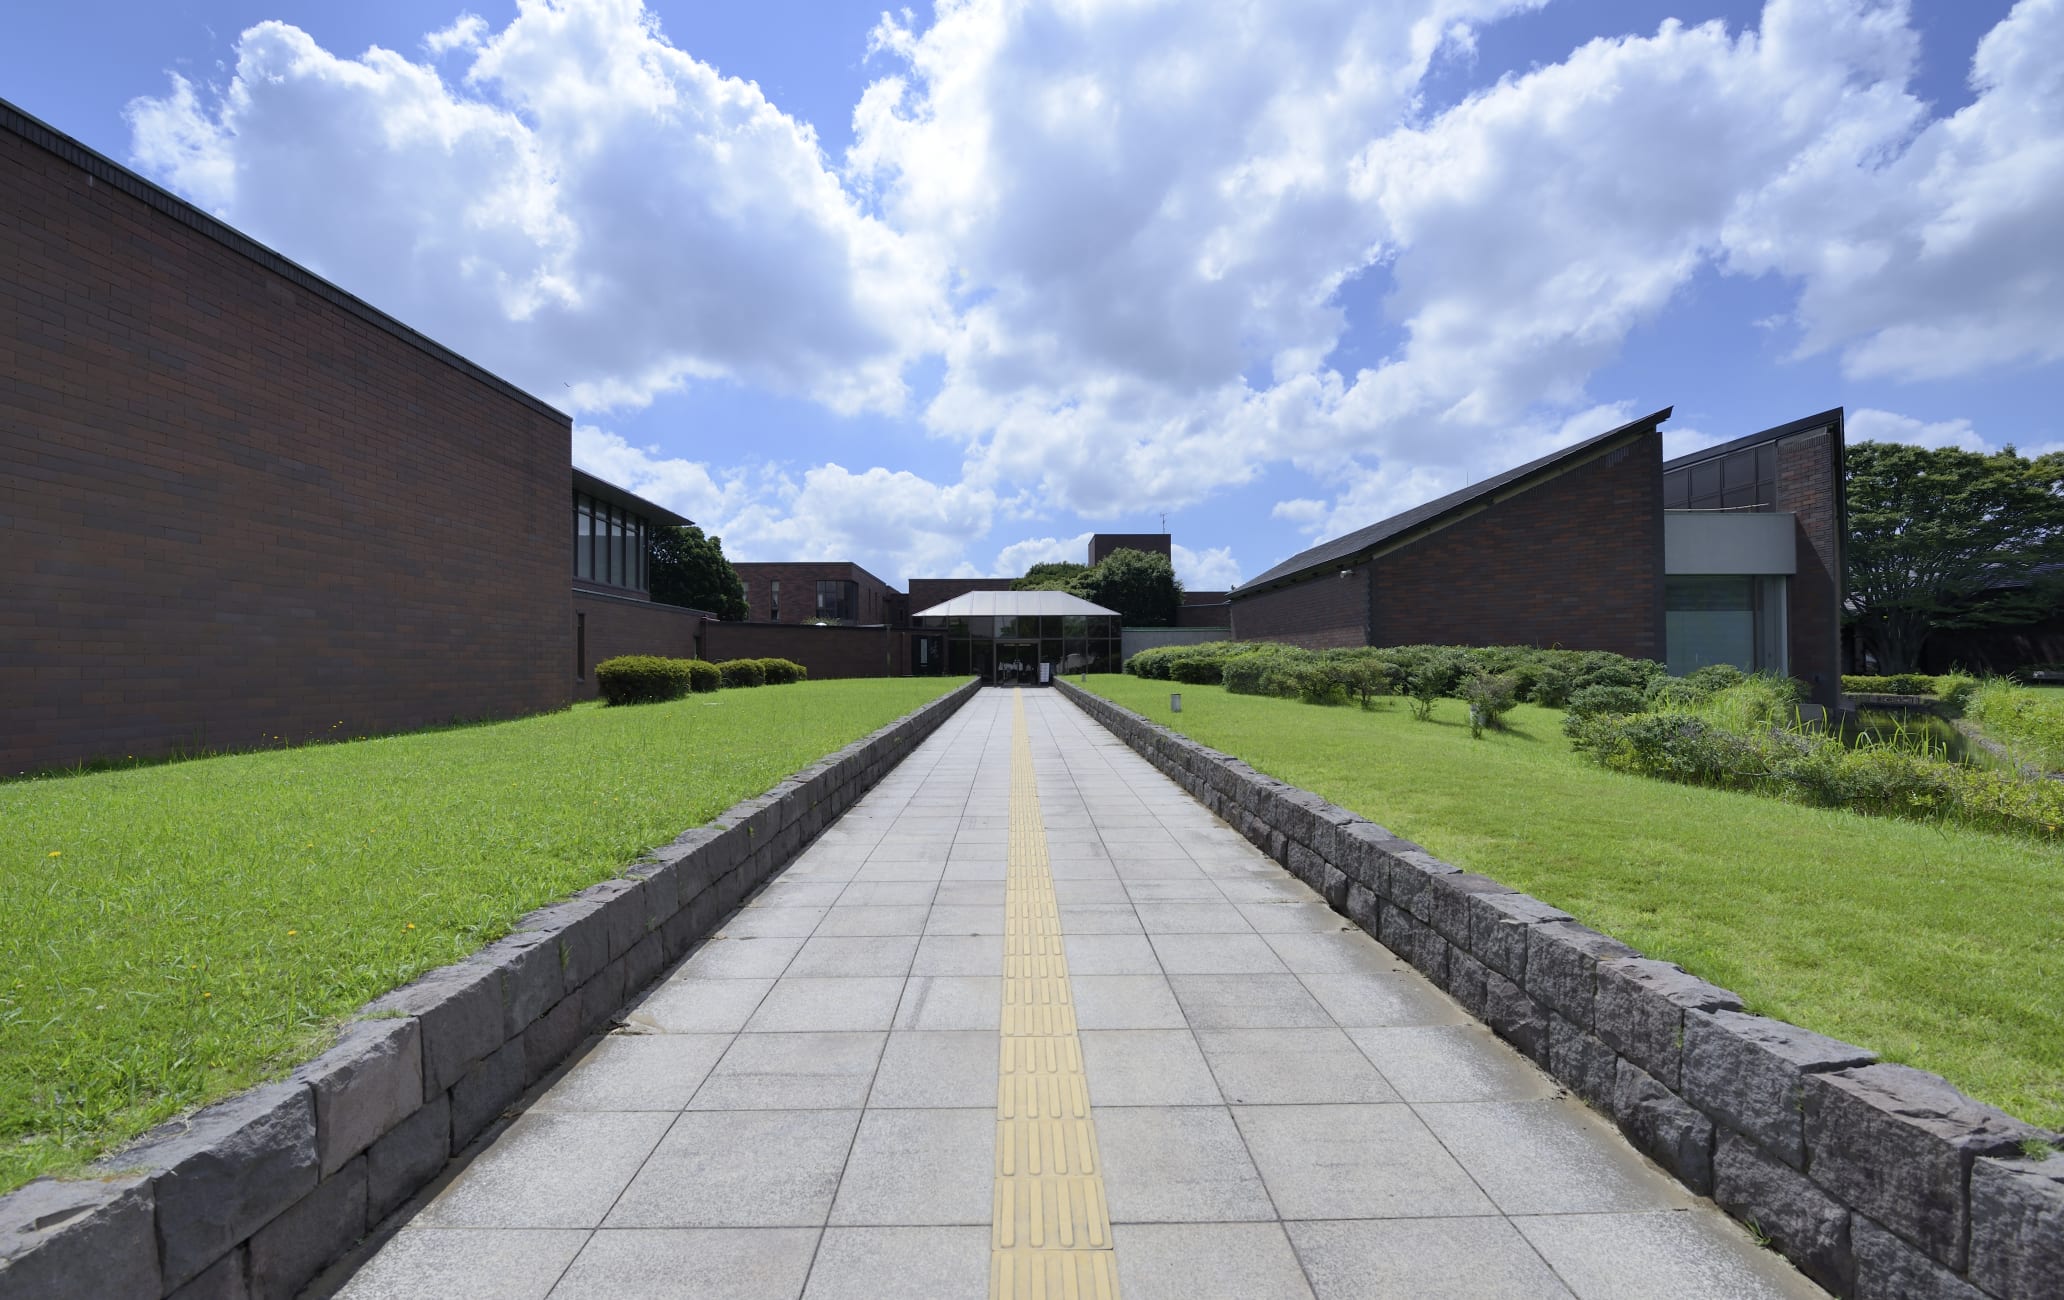 Chiba Kenritsu Bijutsukan Art Museum